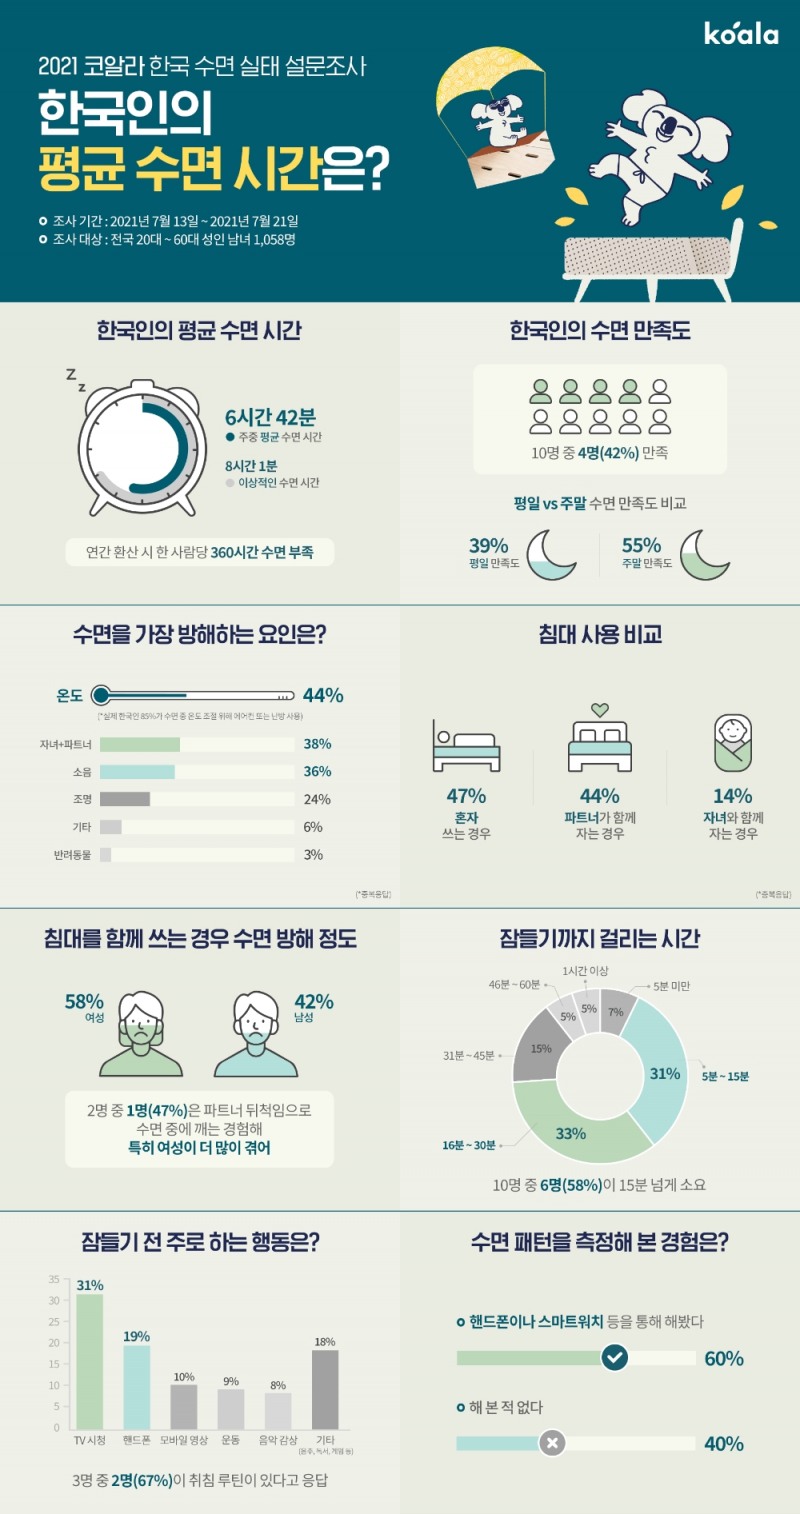 호주 홈퍼니처 기업 ‘코알라’가 발표한 ‘2021 코알라 한국 수면 실태 설문조사’ 인포그래픽